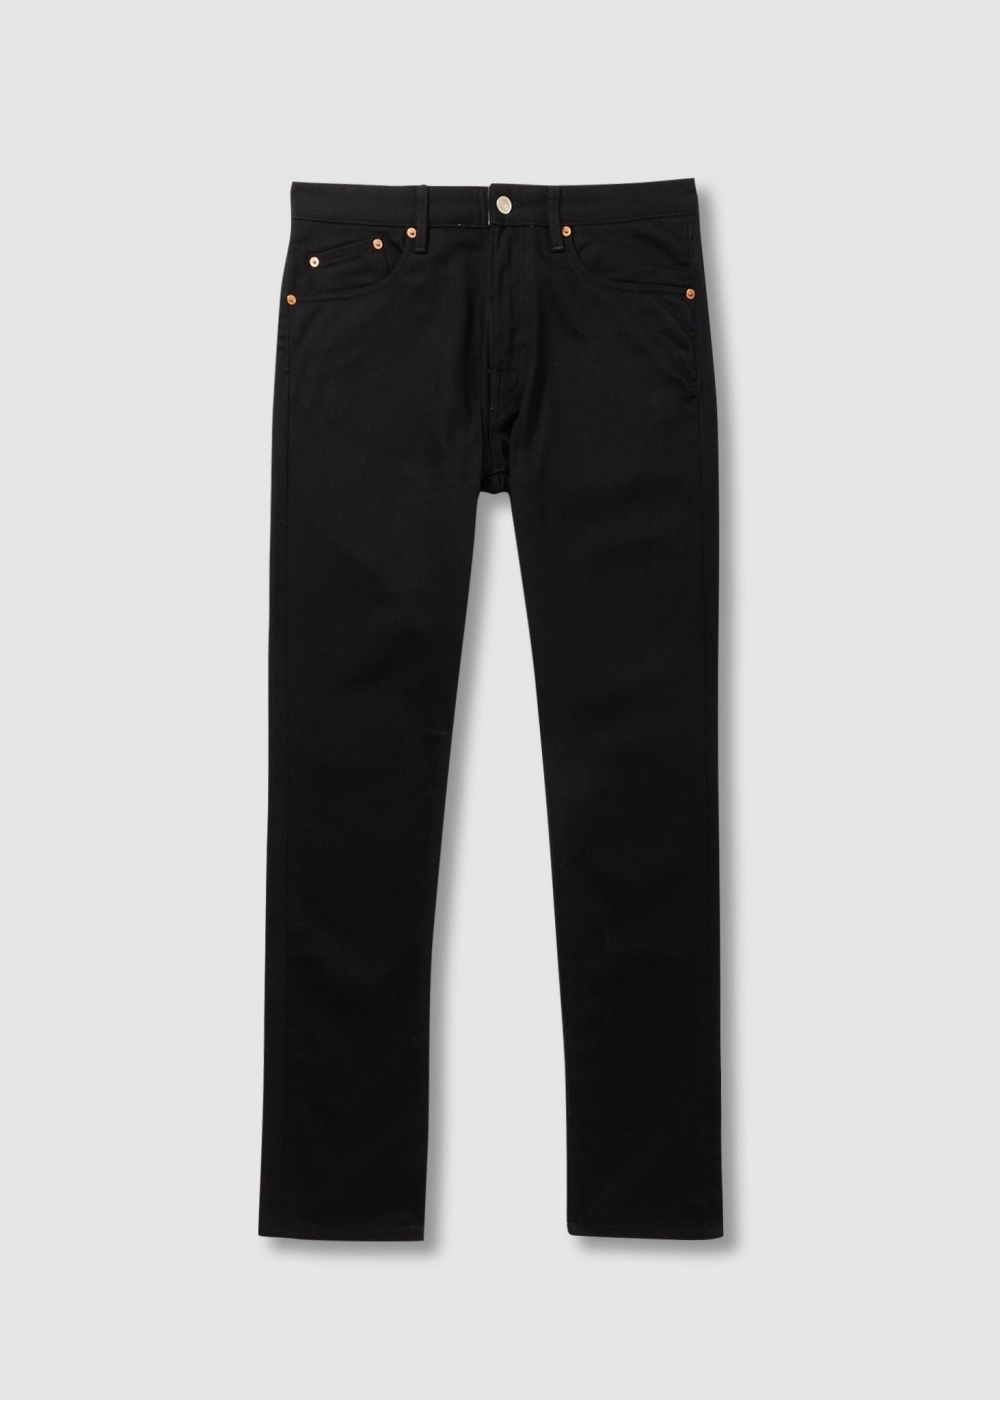 Belstaff Mens Longton Slim Jeans In Black Washed